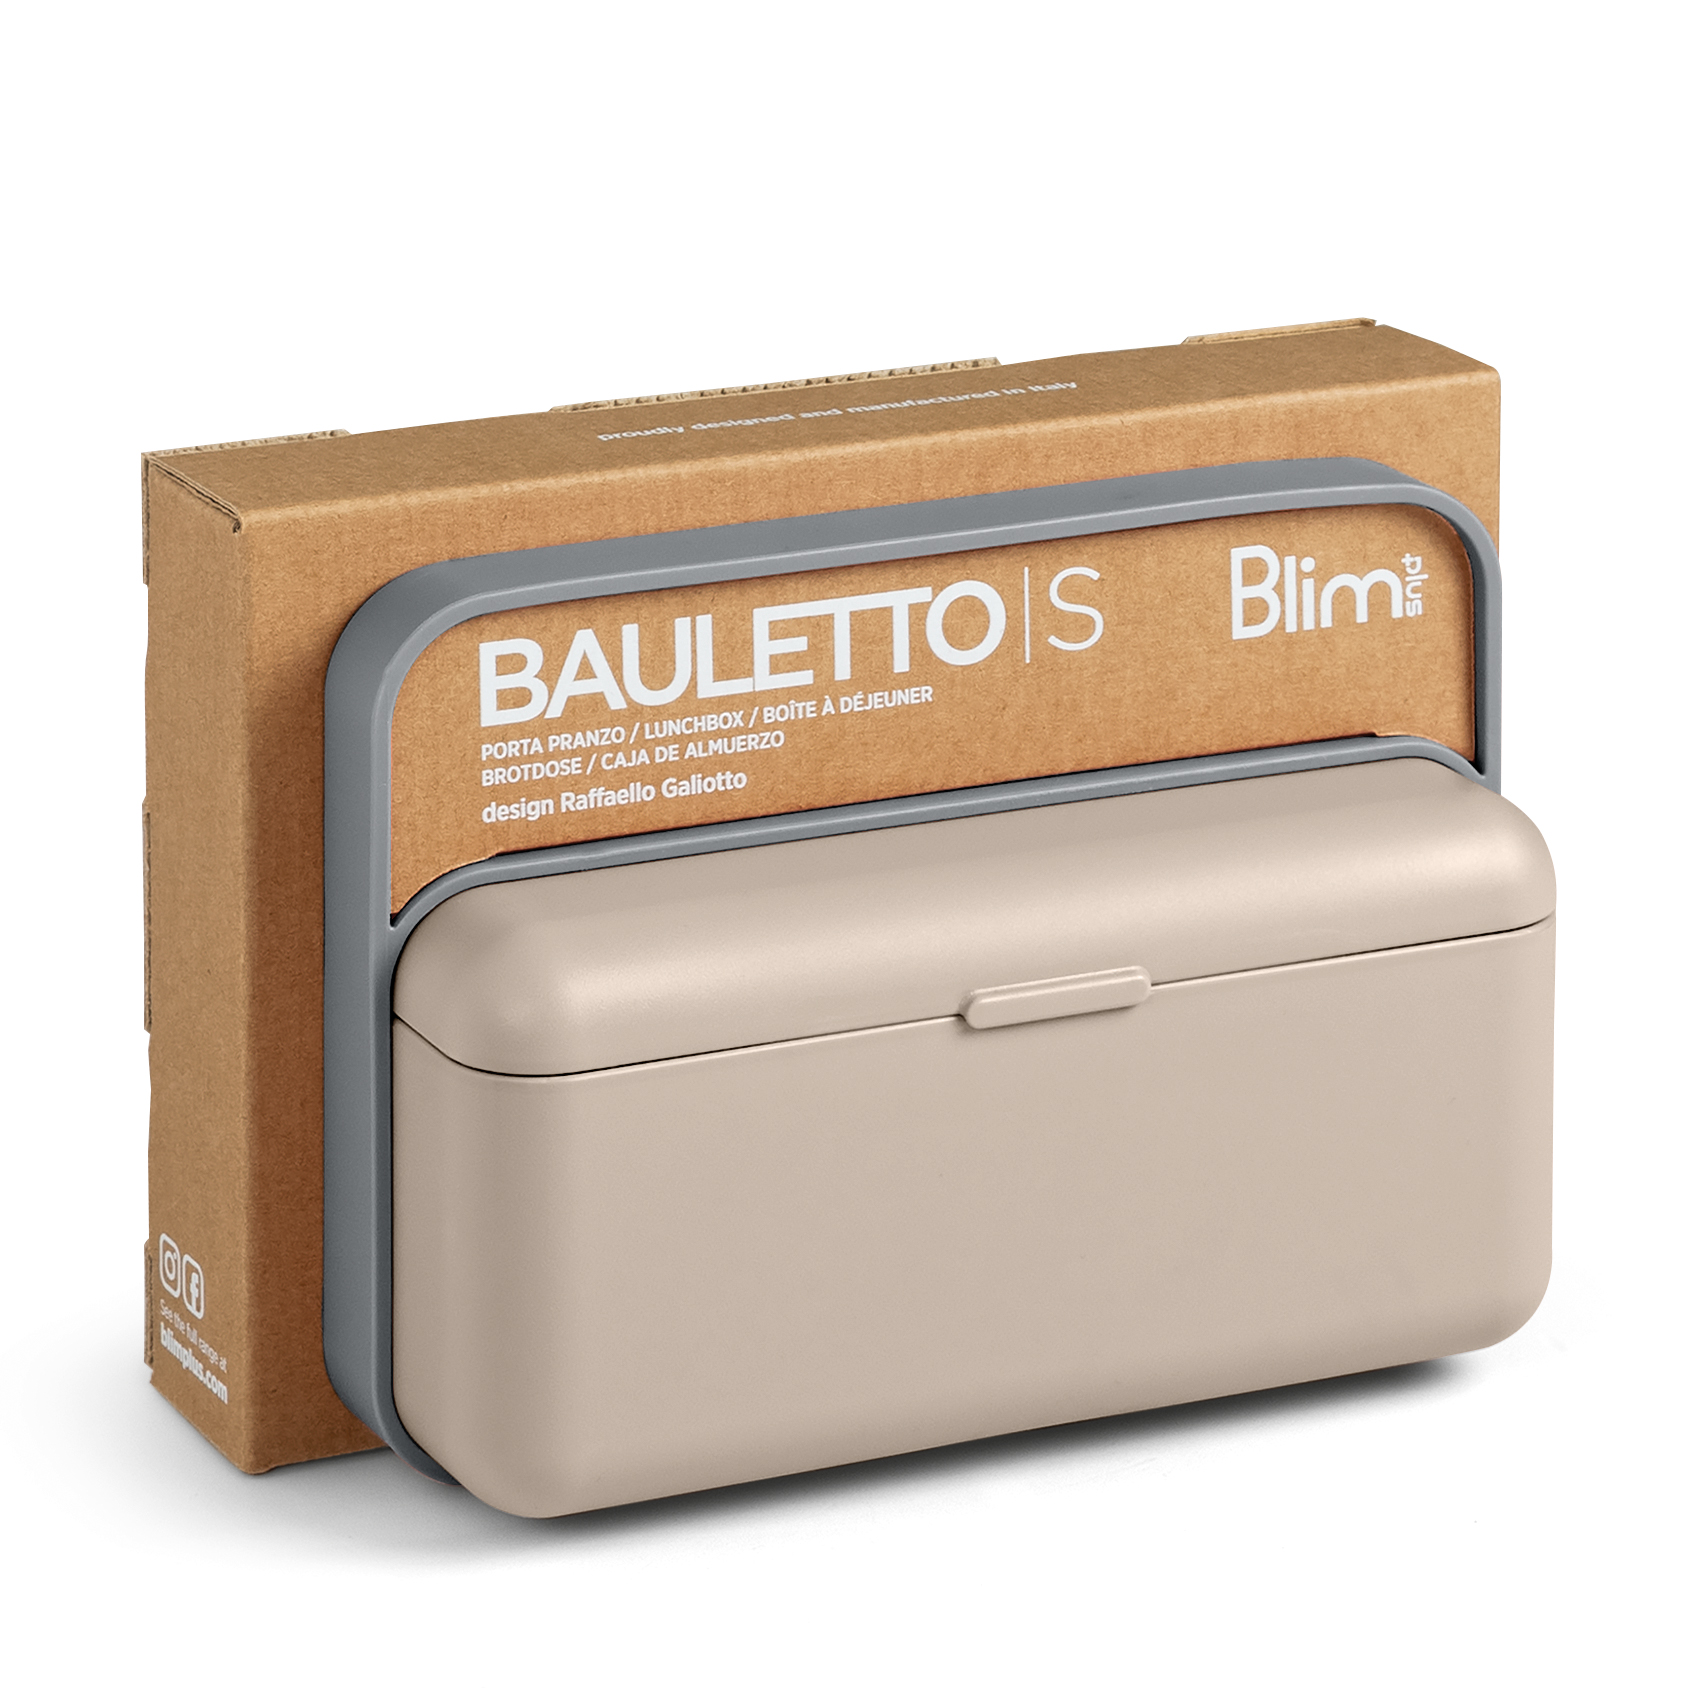 Bauletto - Blim+